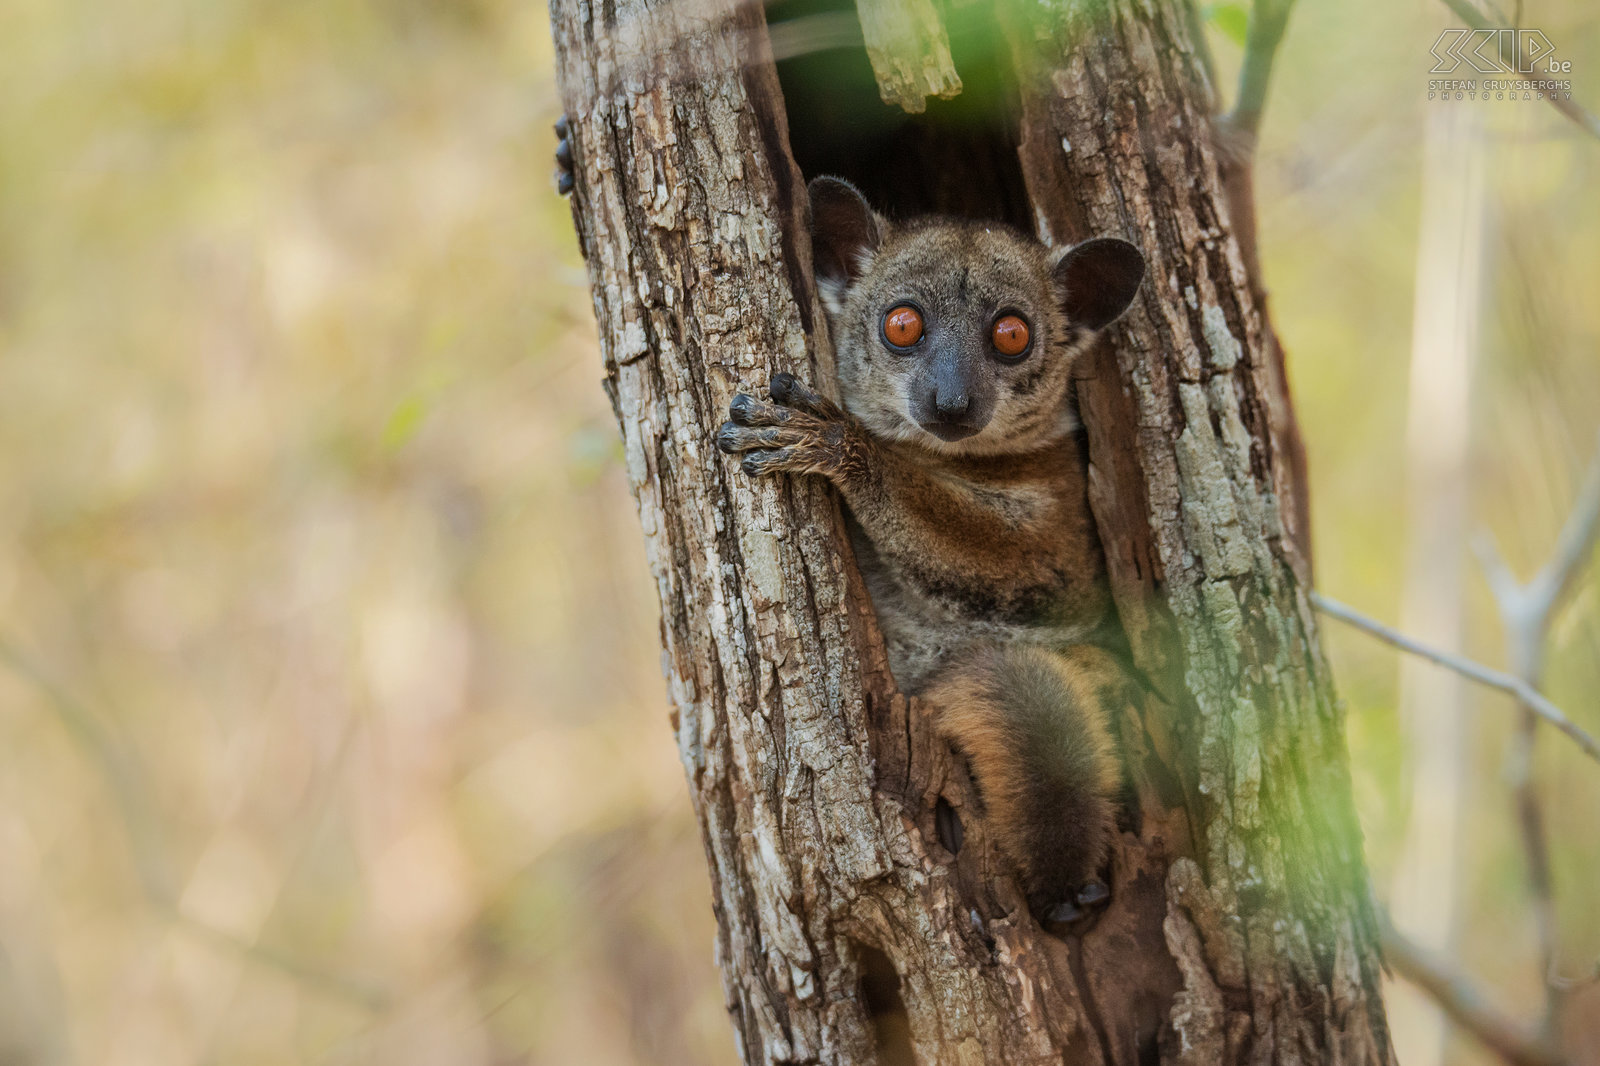 Kirindy - Roodstaartwezelmaki  De roodstaartwezelmaki (Red-tailed sportive lemur, Red-tailed weasel lemur, Lepilemur ruficaudatus) is een lemurensoort die voornamelijk ’s nachts leeft. Overdag slapen ze in een boomholte. We vonden deze kleine schattige maki met zijn grote kleurrijke ogen tijdens een wandeling in het Kirindy Forest. Stefan Cruysberghs